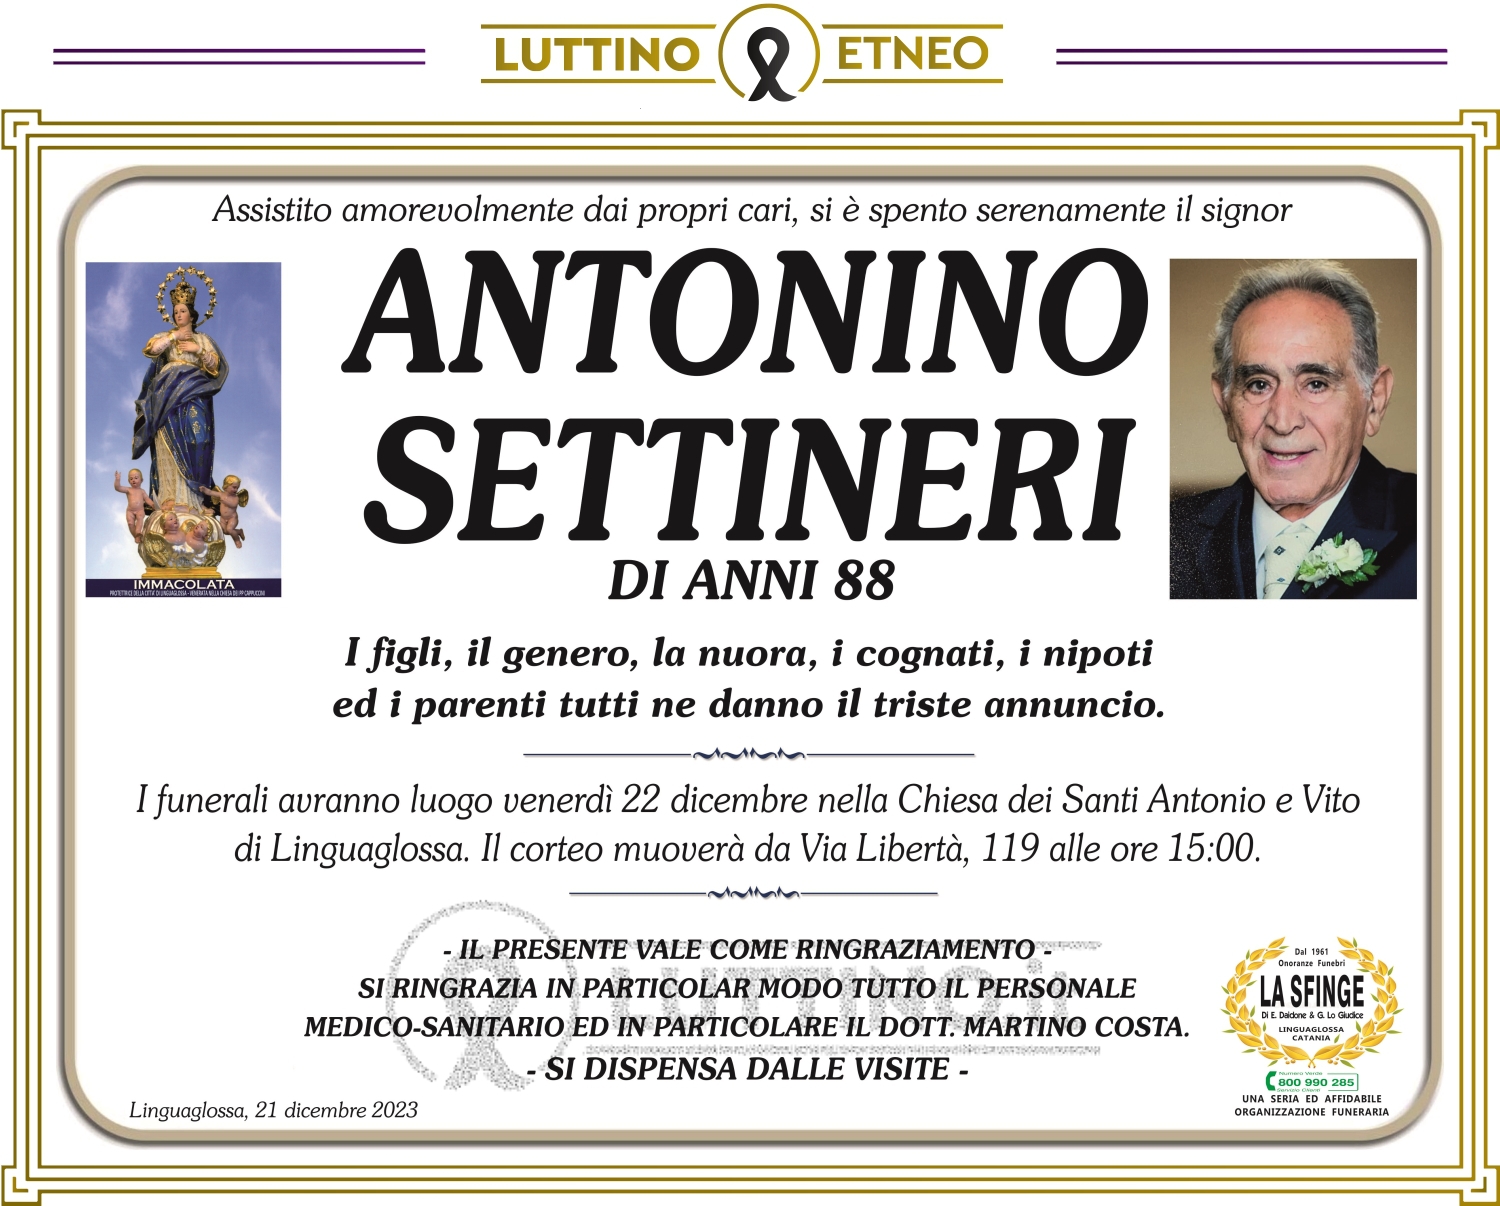 Antonino Settineri